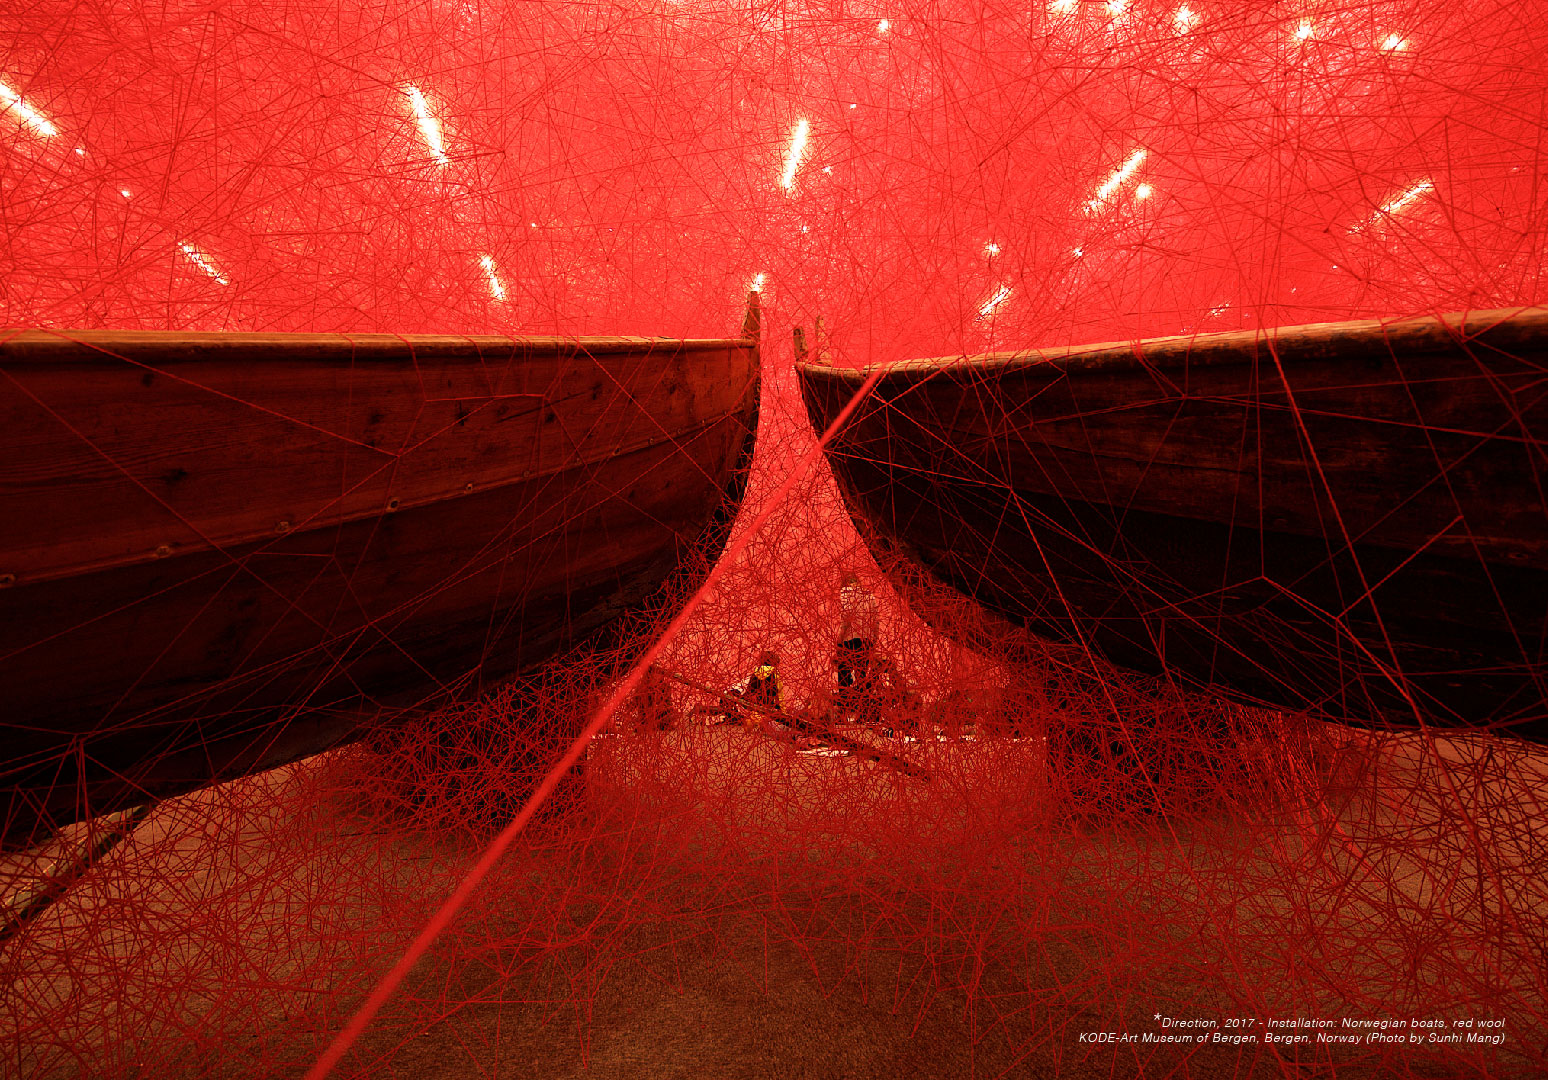 Mở cửa triển lãm sắp đặt “Thủy triều cảm xúc” của nghệ sĩ Chiharu Shiota tại Việt Nam - Ảnh 4.